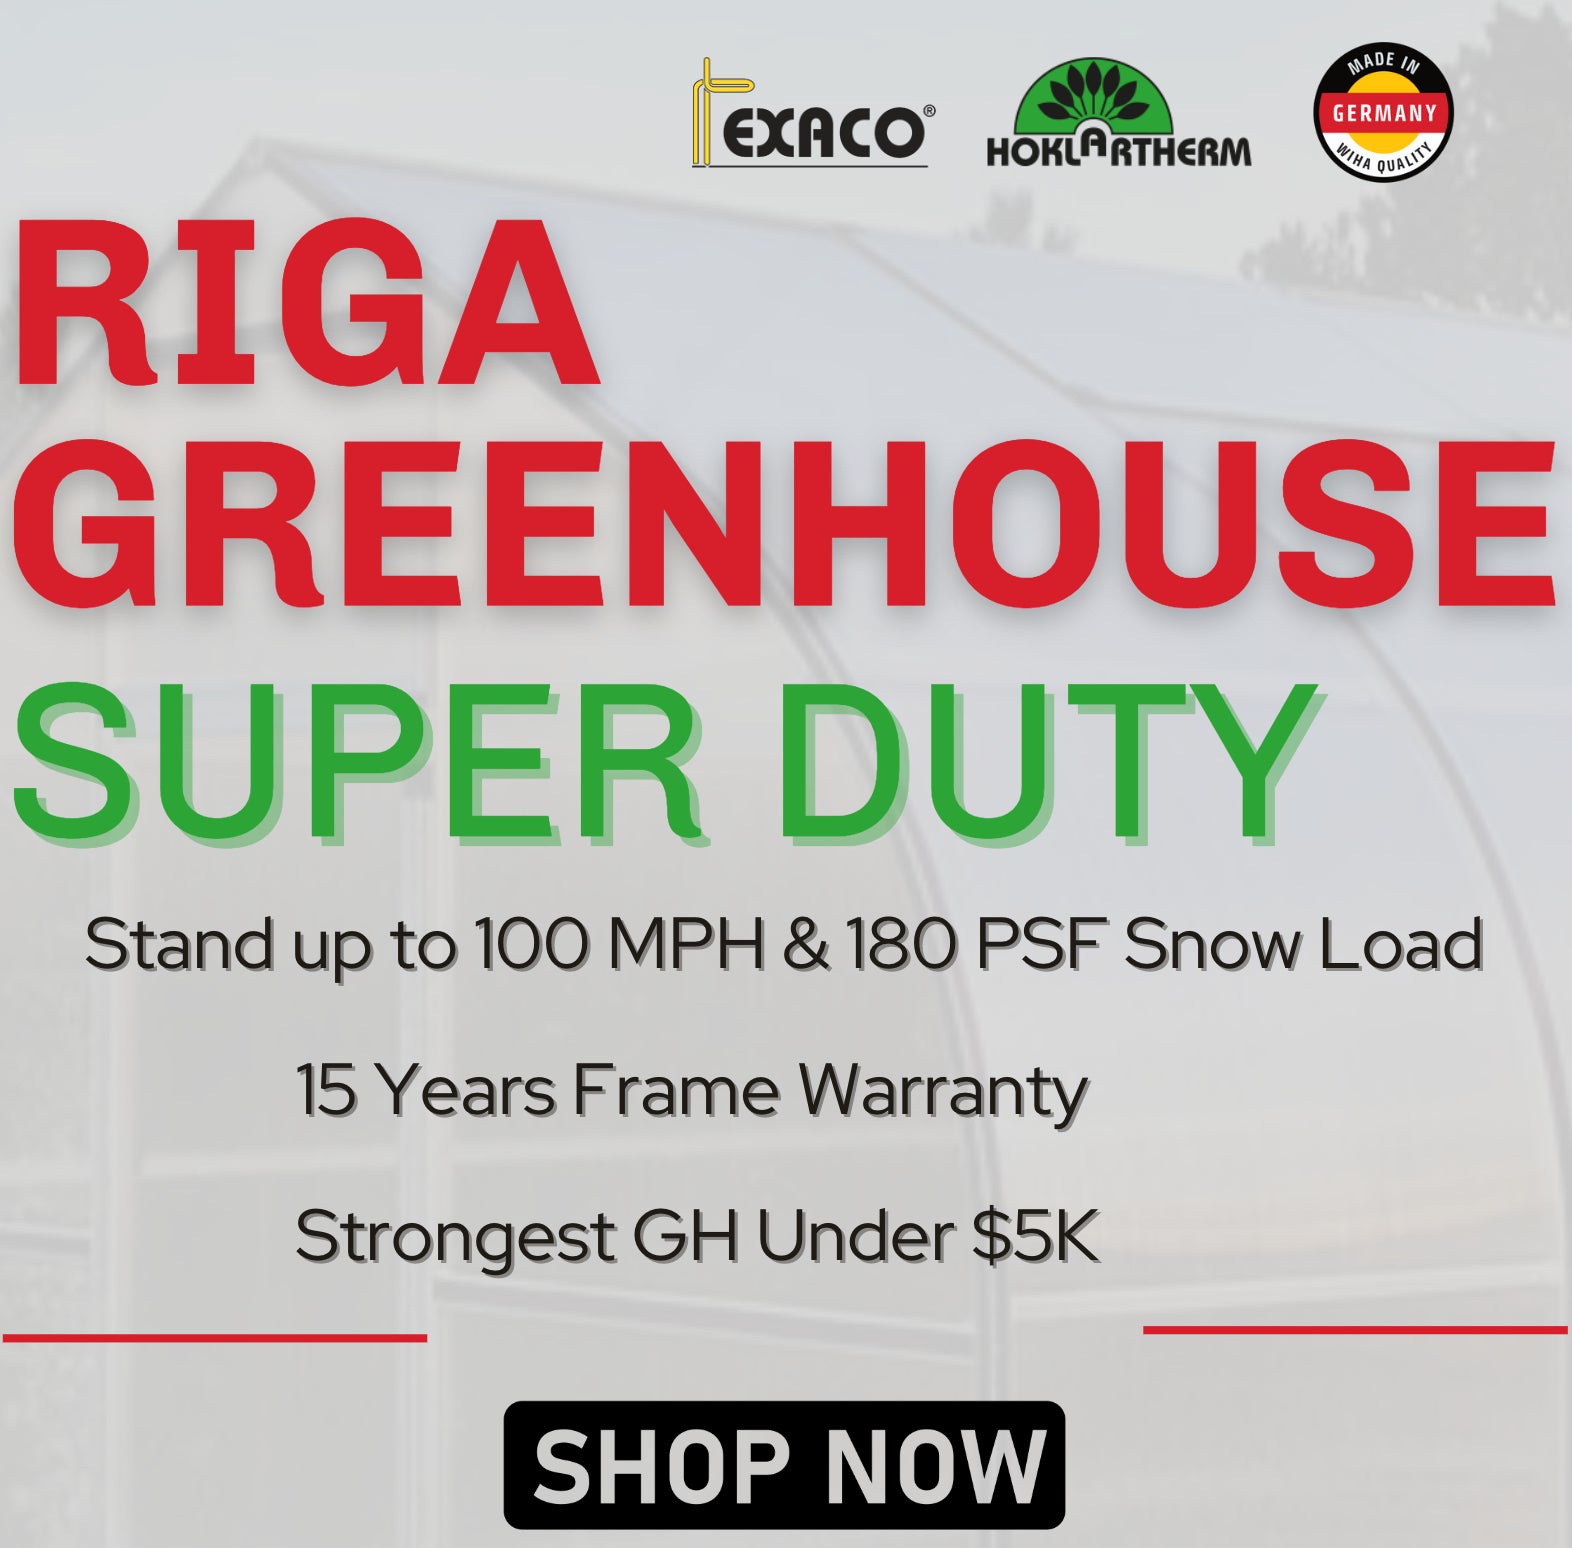 RIGA L Greenhouse - RIGA 5™ 10X7X18.ft Greenhouse/Special Kit